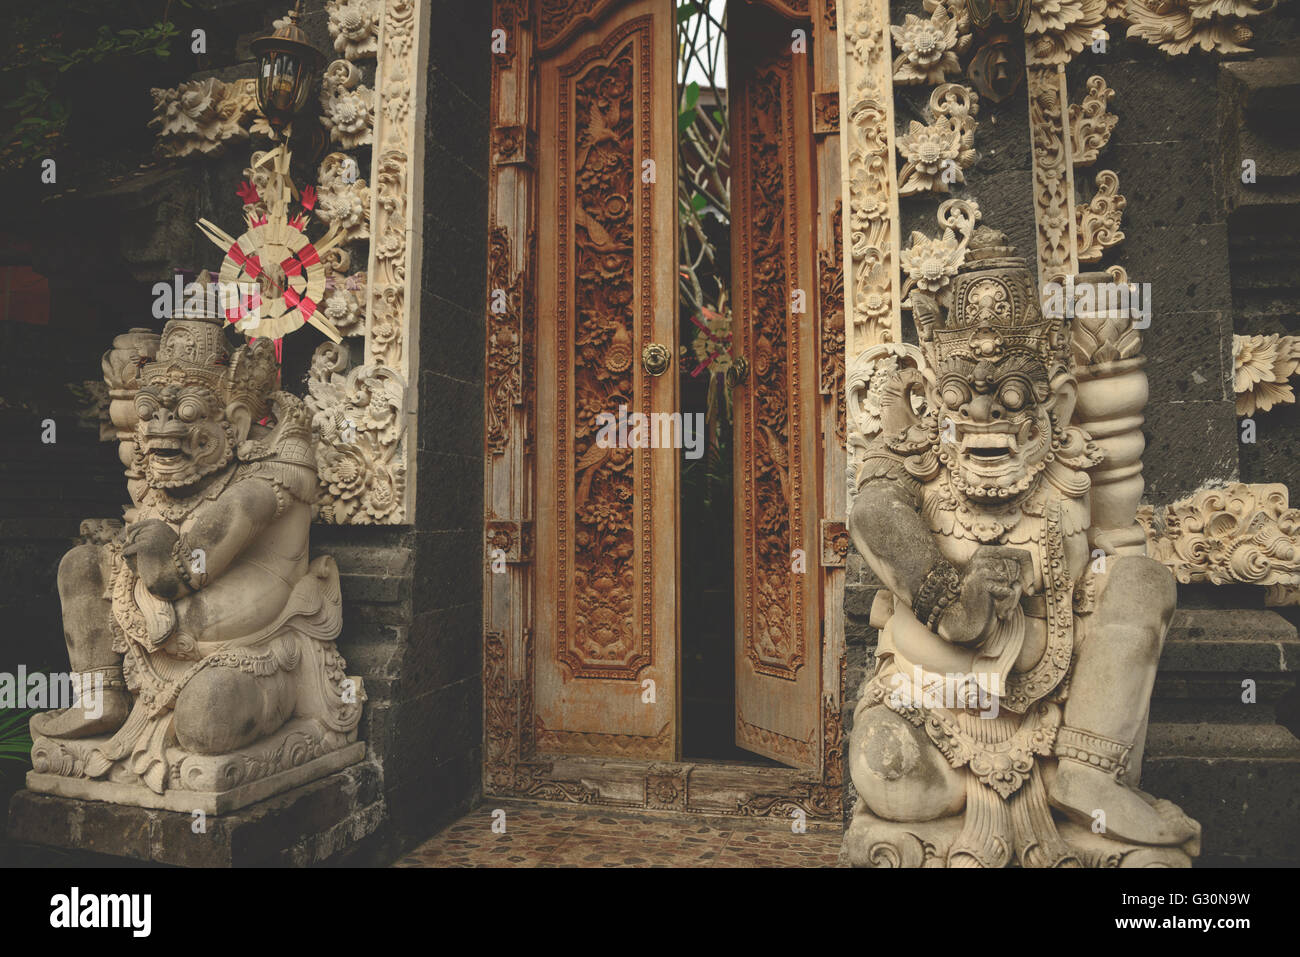 Temple doorway in Ubud, Bali Stock Photo